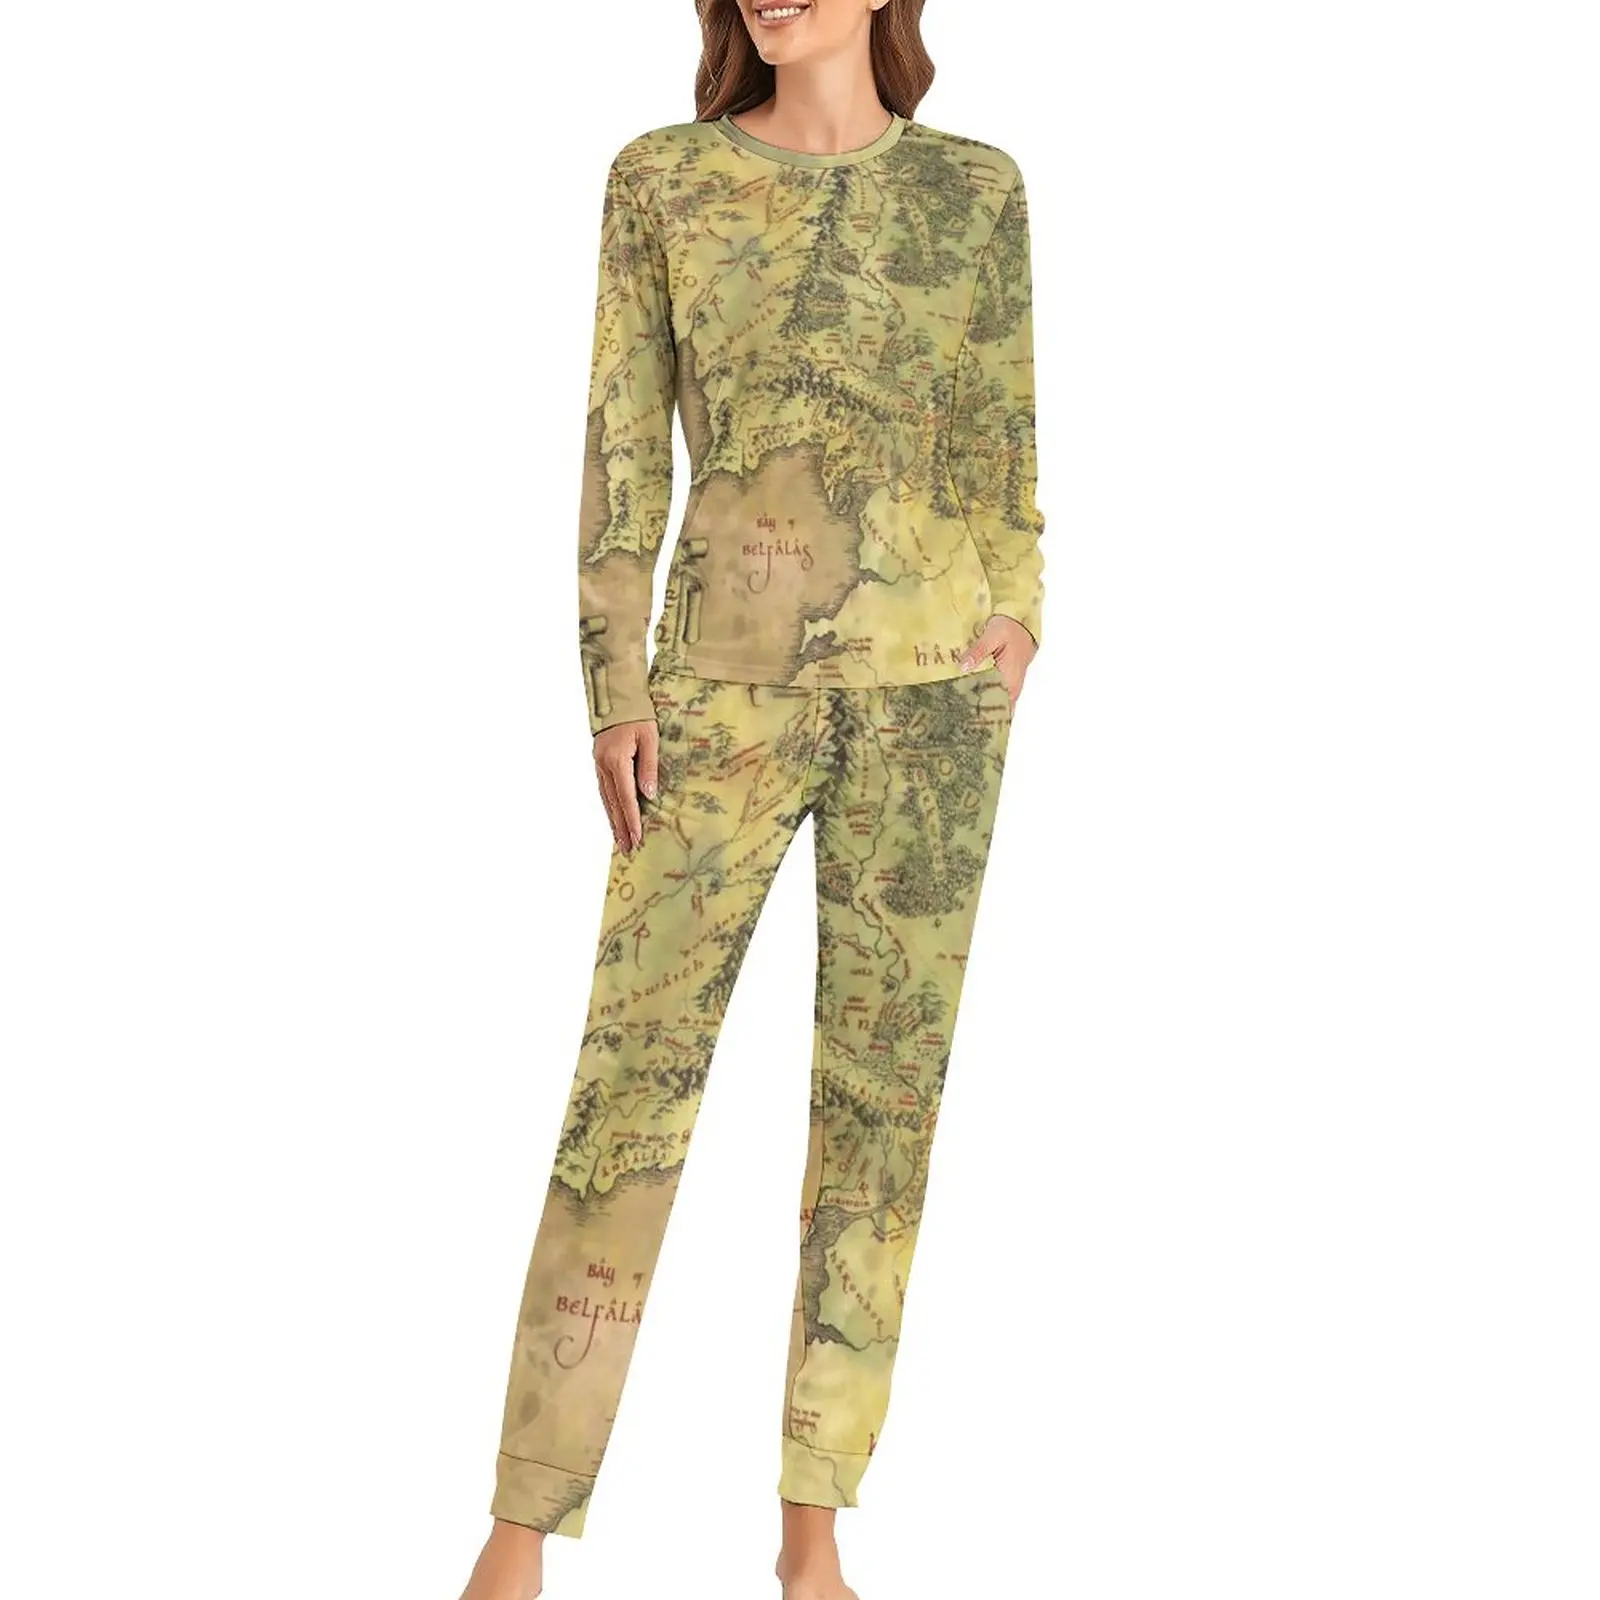 

Пижама с картой ближней земли, принт с картами мира, 2 предмета, повседневный пижамный комплект, женская ночная сорочка оверсайз в стиле ретро с длинным рукавом